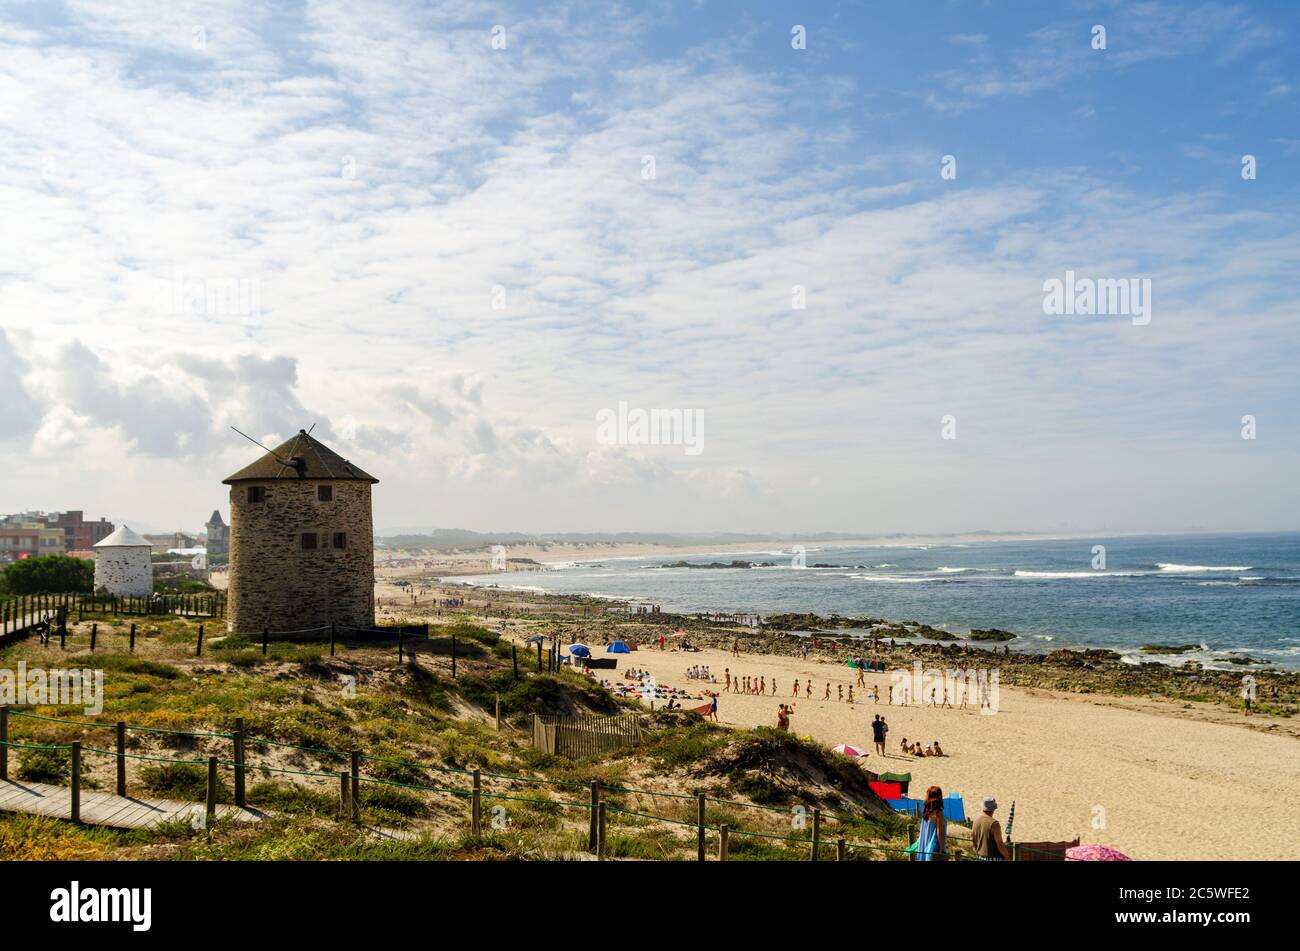 Portugiesische Mühle Häuser in den Dünen von einem Strand voll Von Touristen am Meer in Apulien während des sonnigen Sommers Wetter Stockfoto